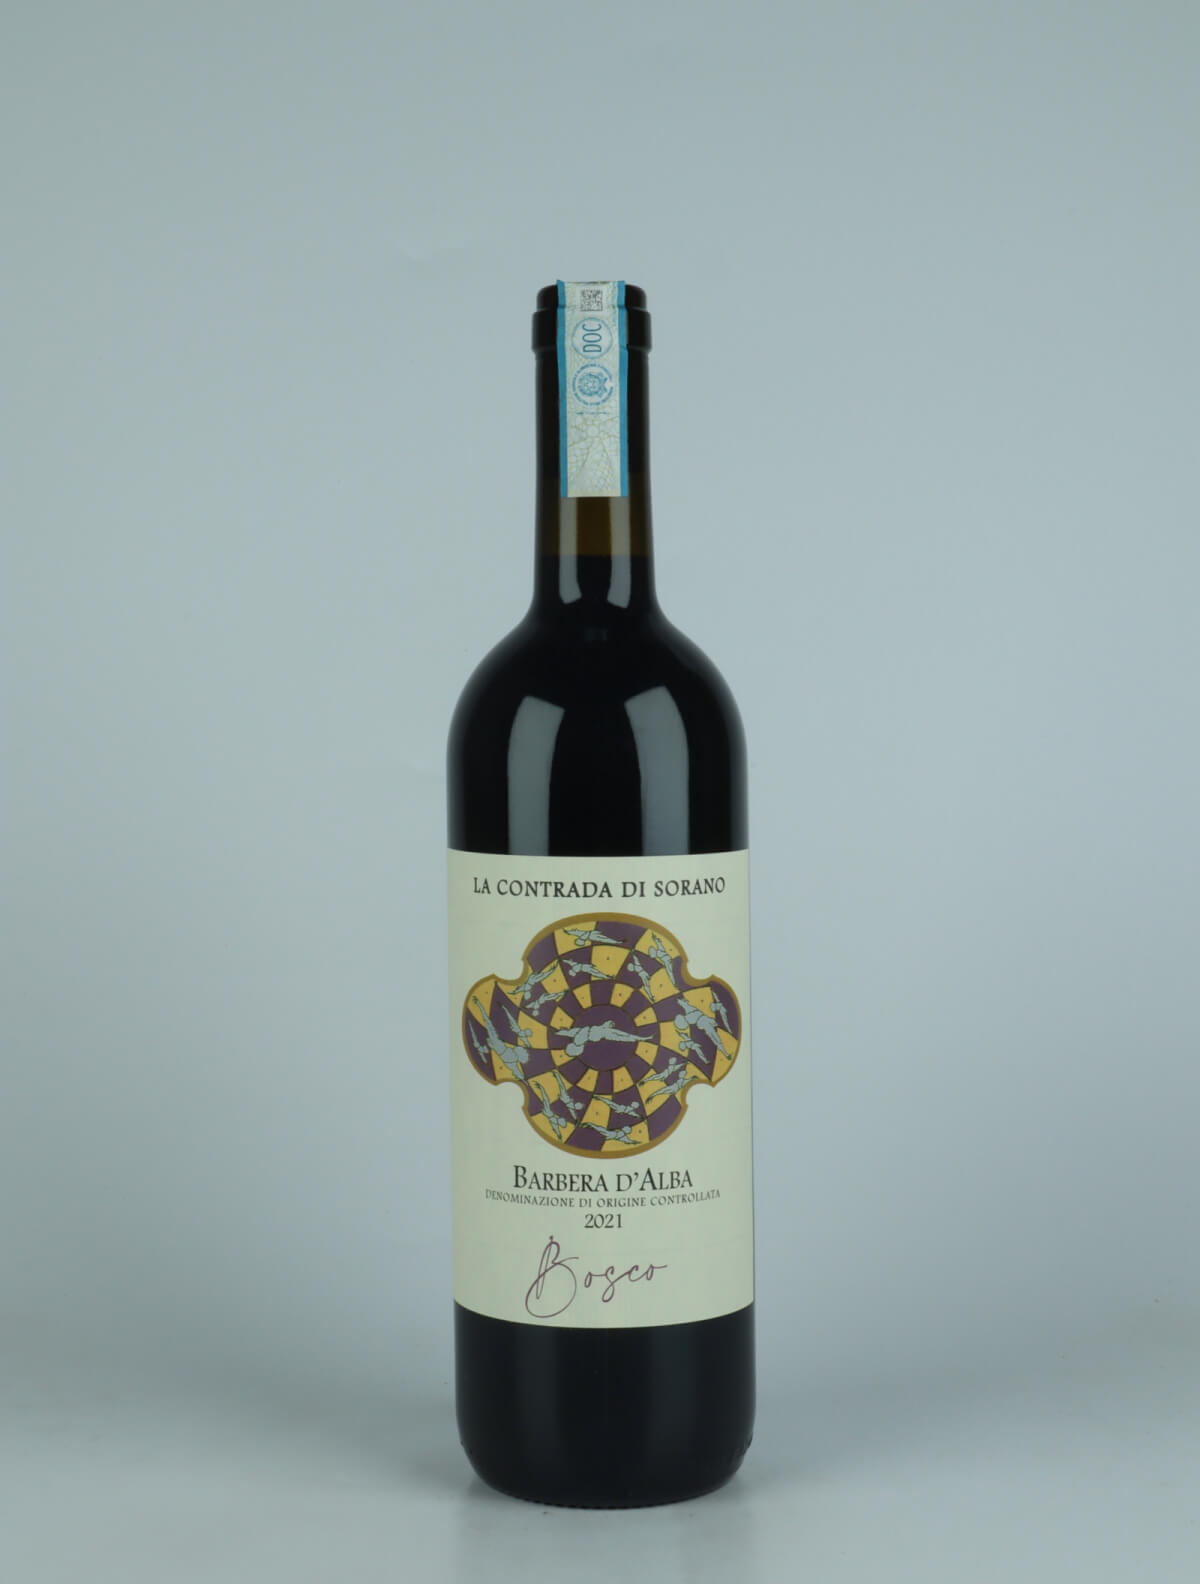 A bottle 2021 Barbera d'Alba - Bosco Red wine from La Contrada di Sorano, Piedmont in Italy